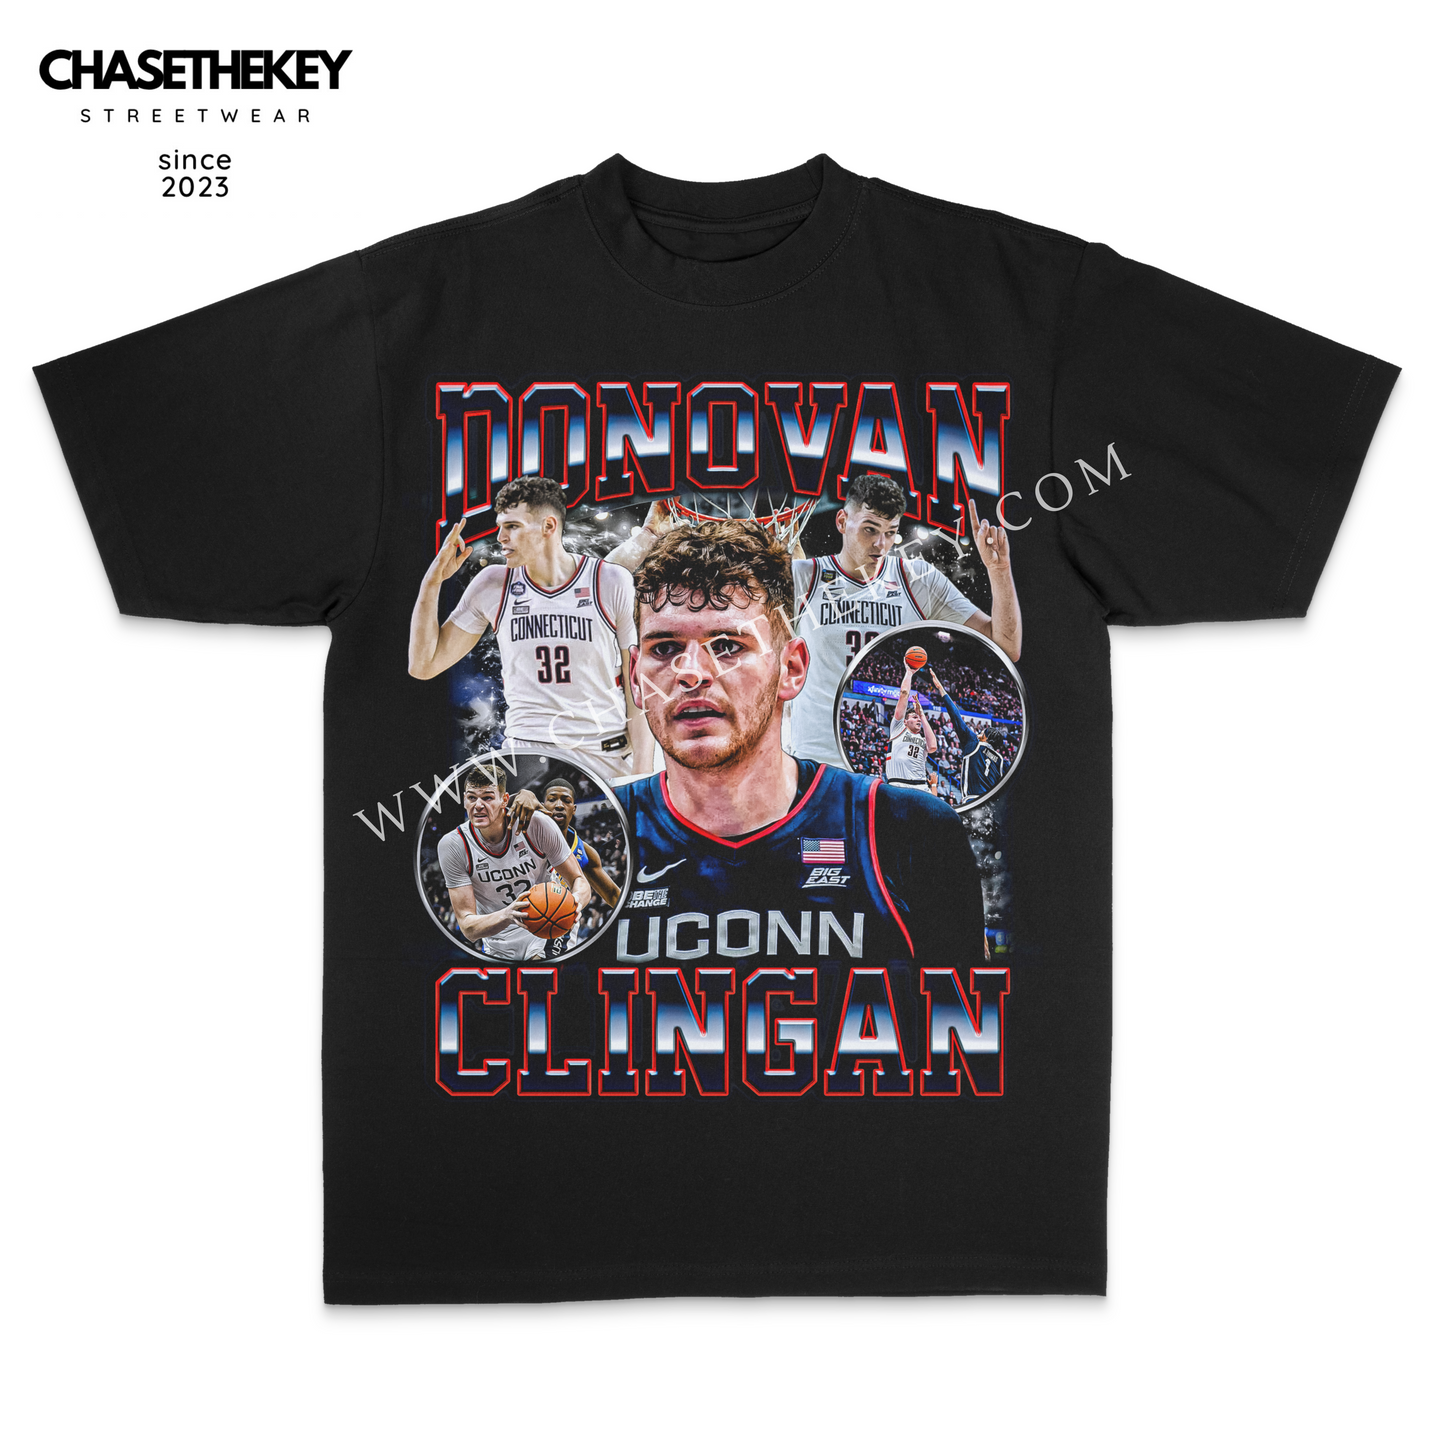 Donovan Clingan UConn Huskies Shirt